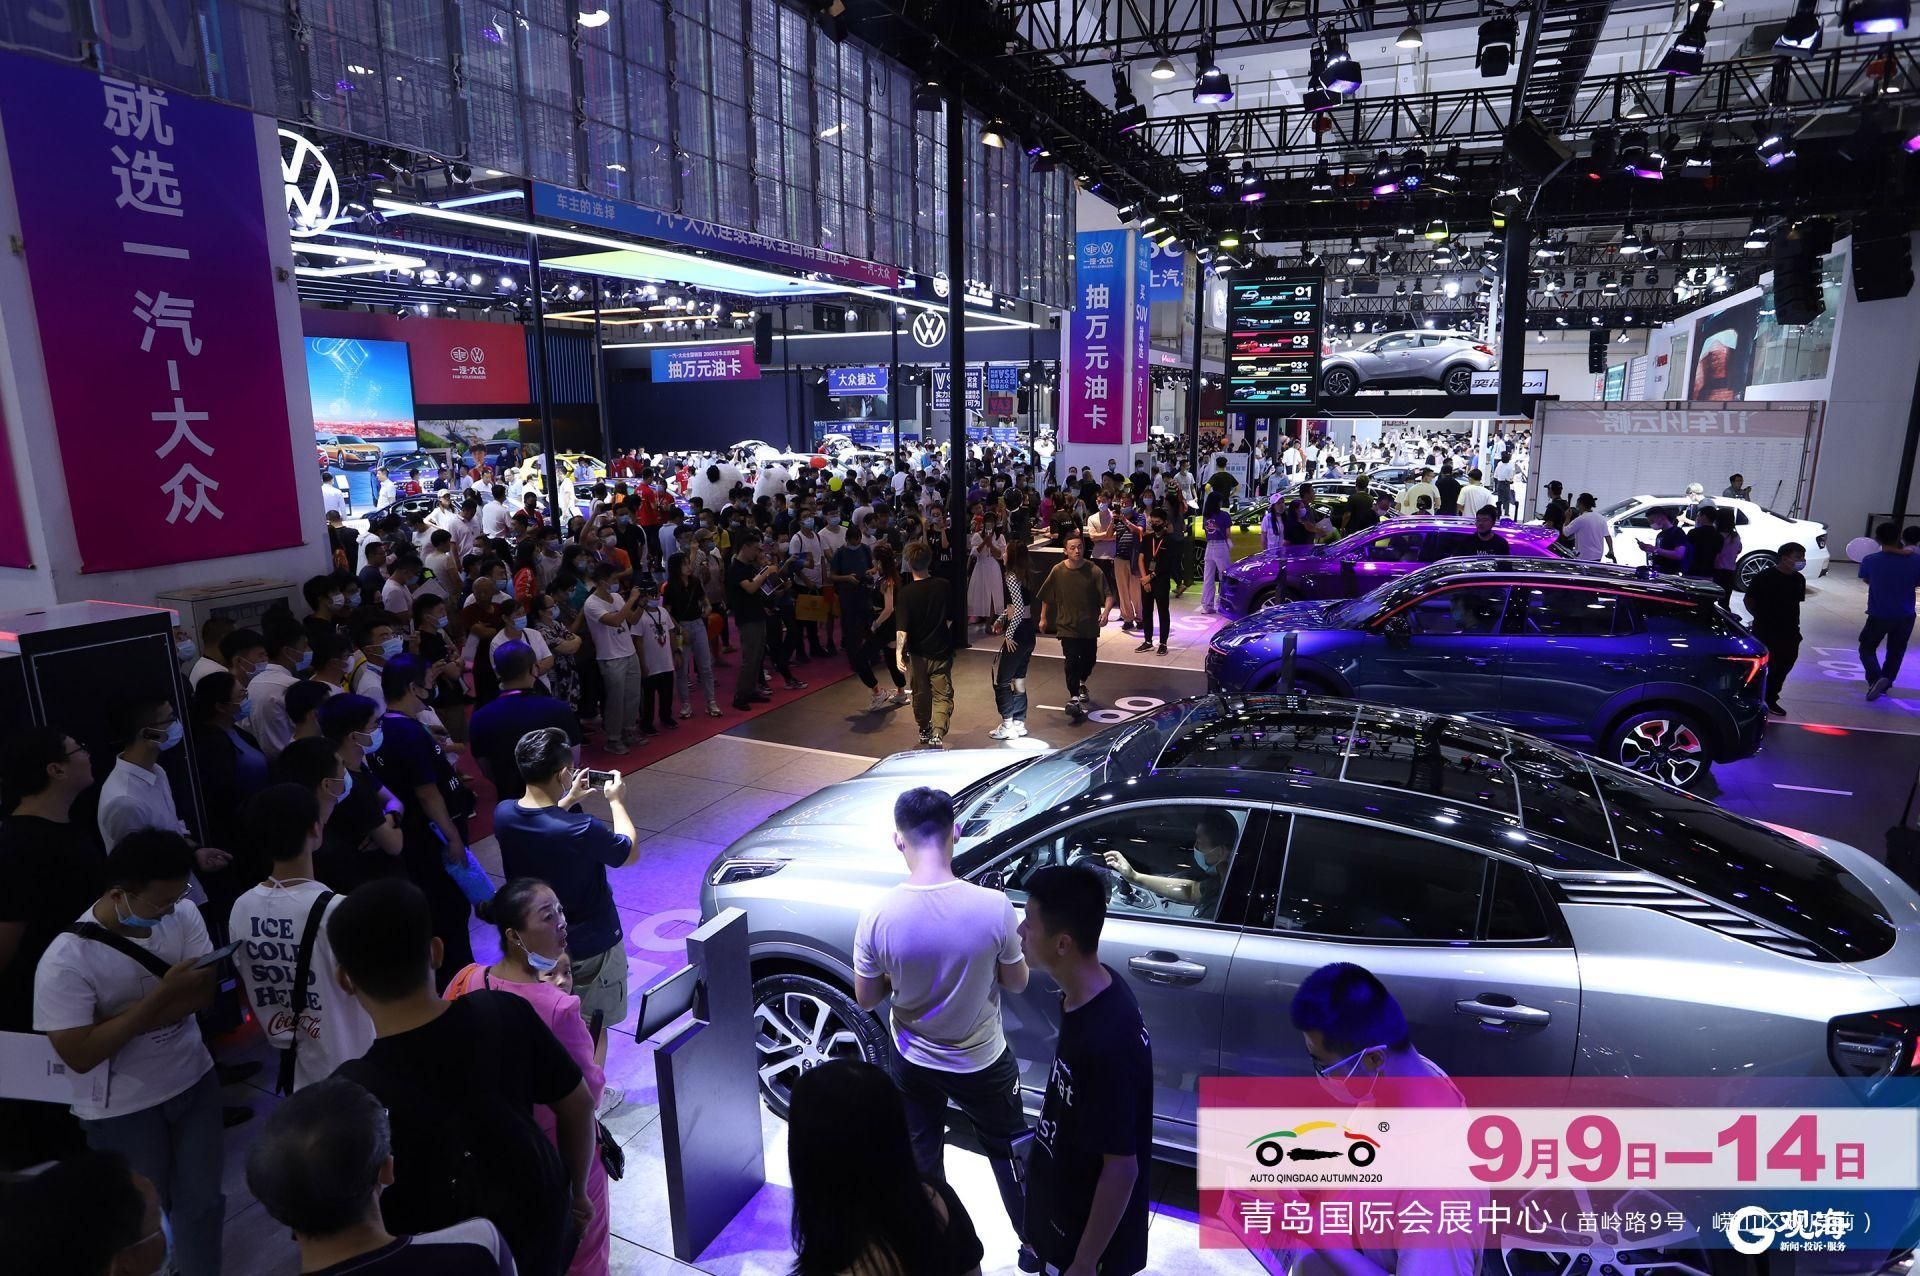 励为展览官网 - 上海国际车展 | 北京国际车展 | 国际汽车创新技术周 | 新能源汽车技术展览会 | 国际汽车工业展览会 | 智能网联汽车展览会